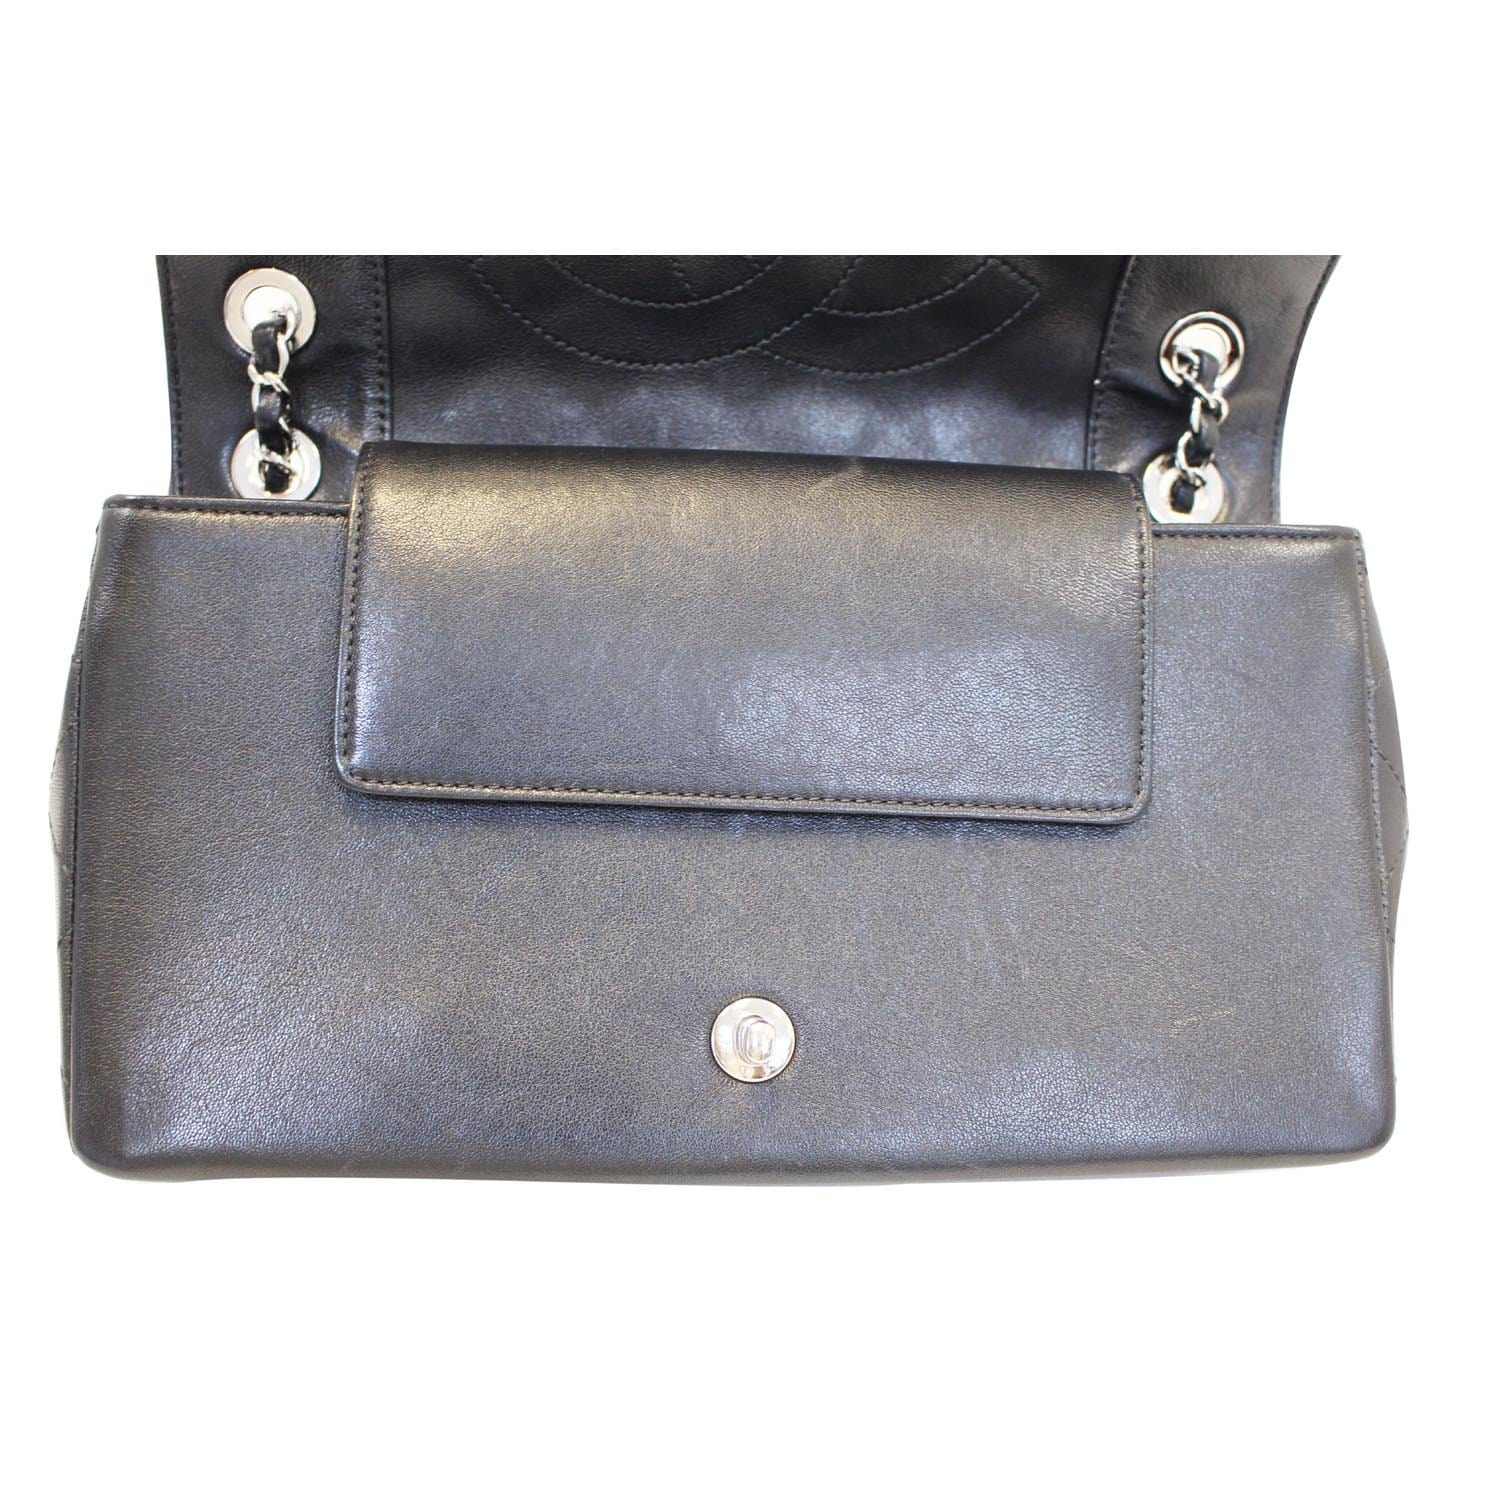 CHANEL Mademoiselle Vintage Flap Sheepskin Leather Shoulder Bag